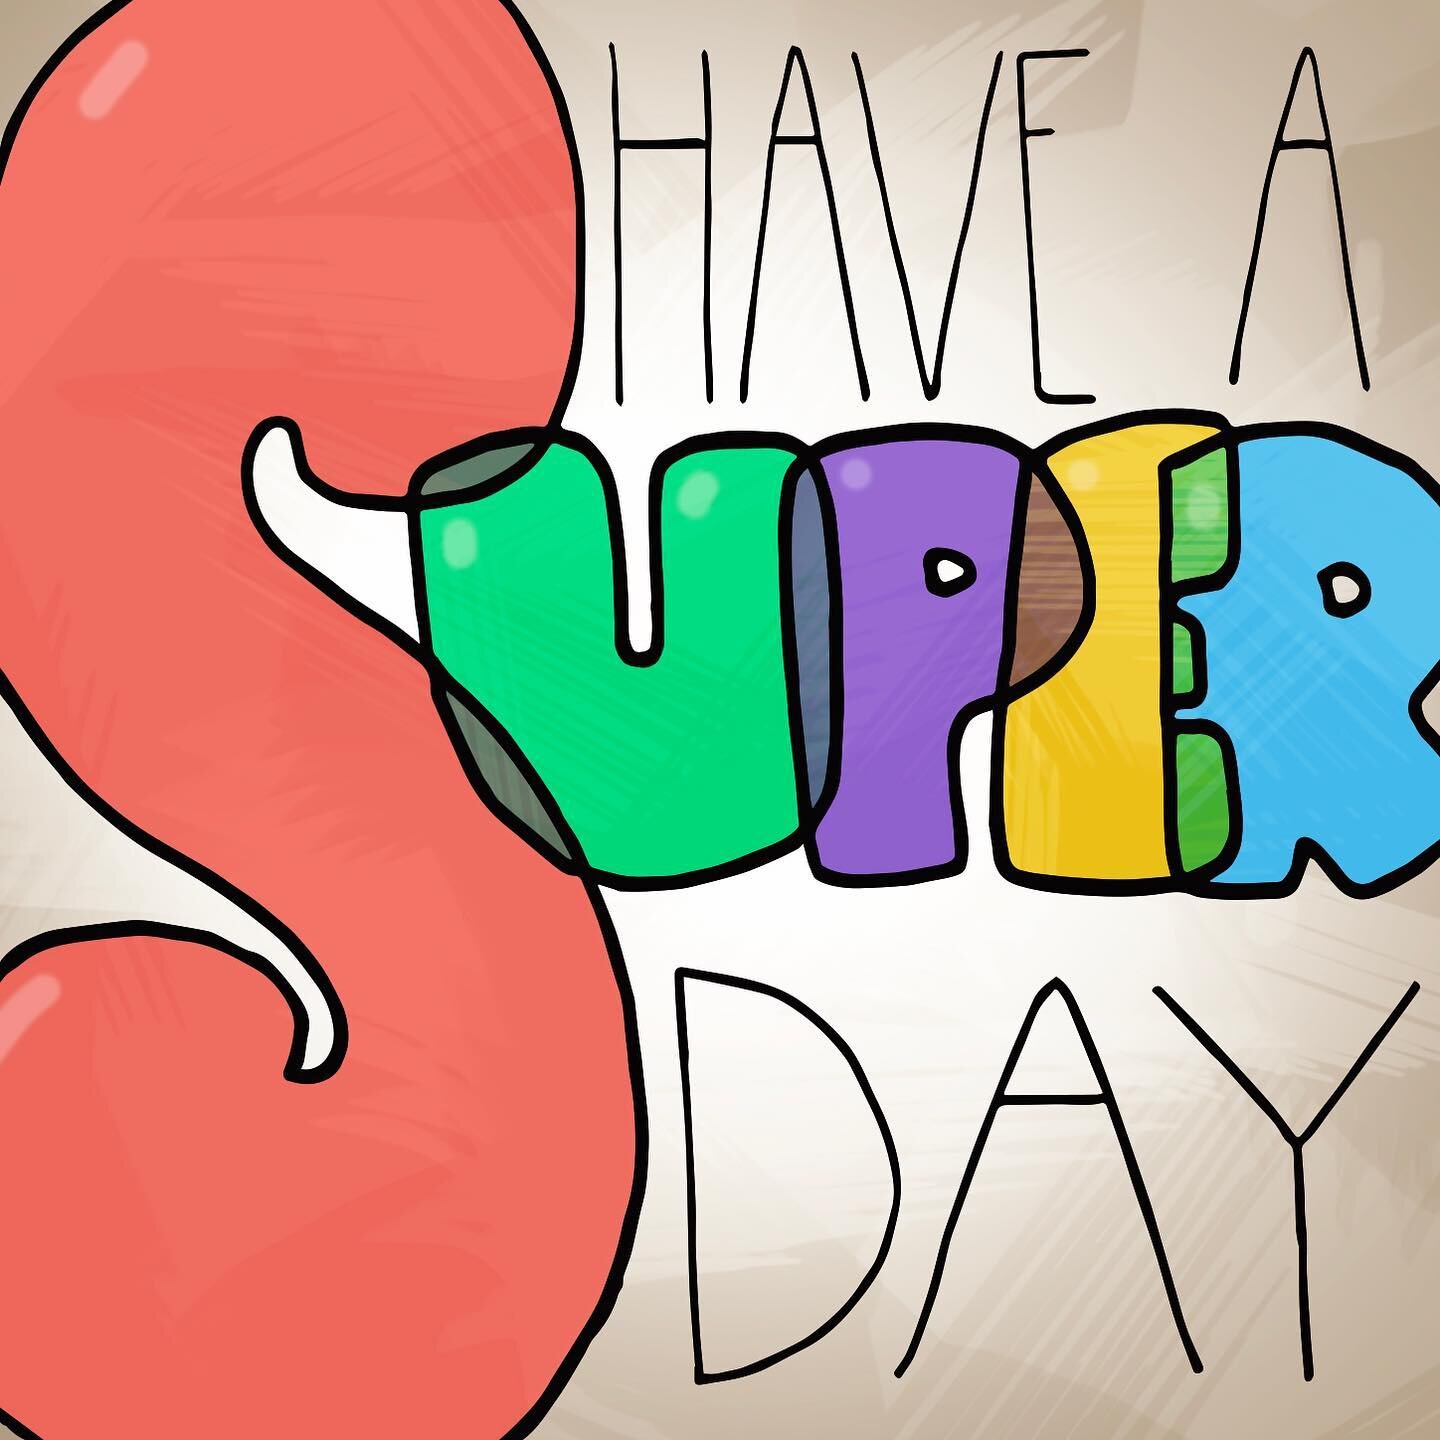 Have a SUPER day! 😁
#Super